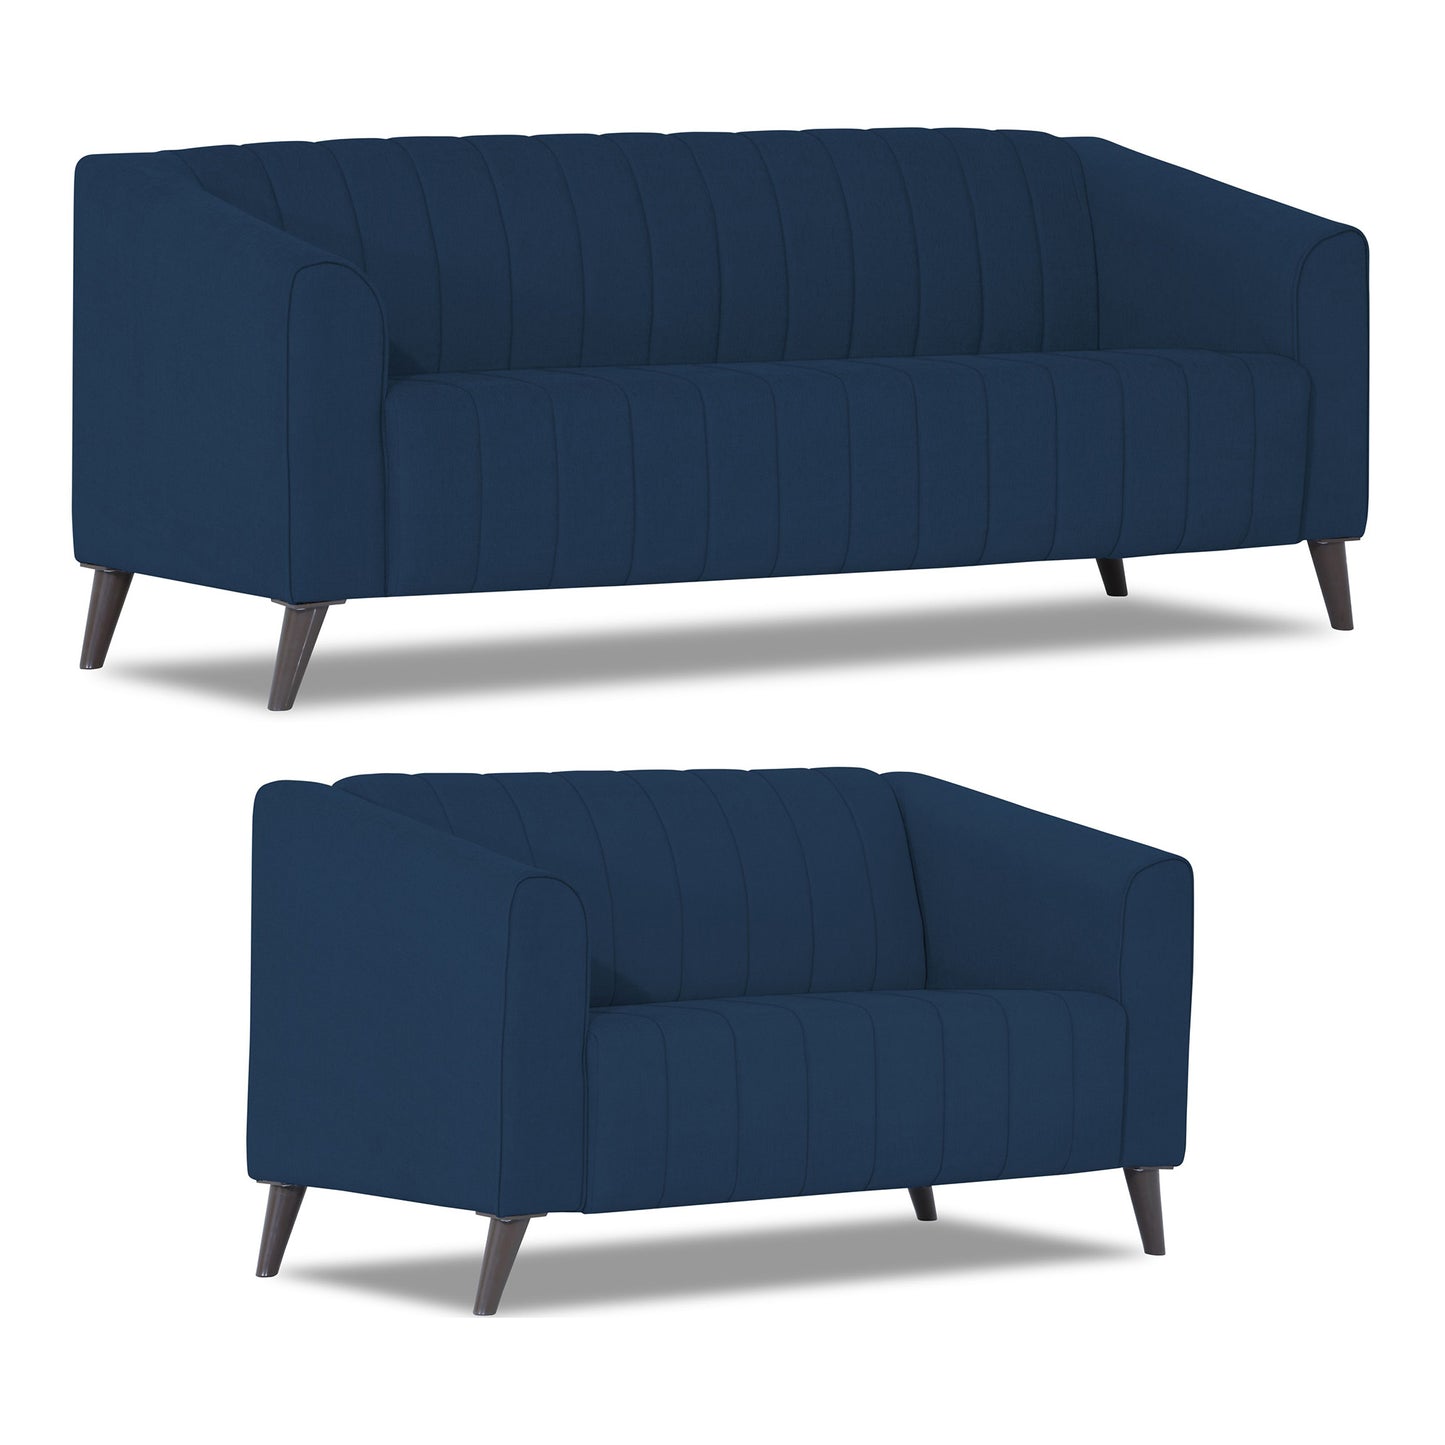 Adorn India Premium Laurel 3+2 5 Seater Sofa Set (Blue)